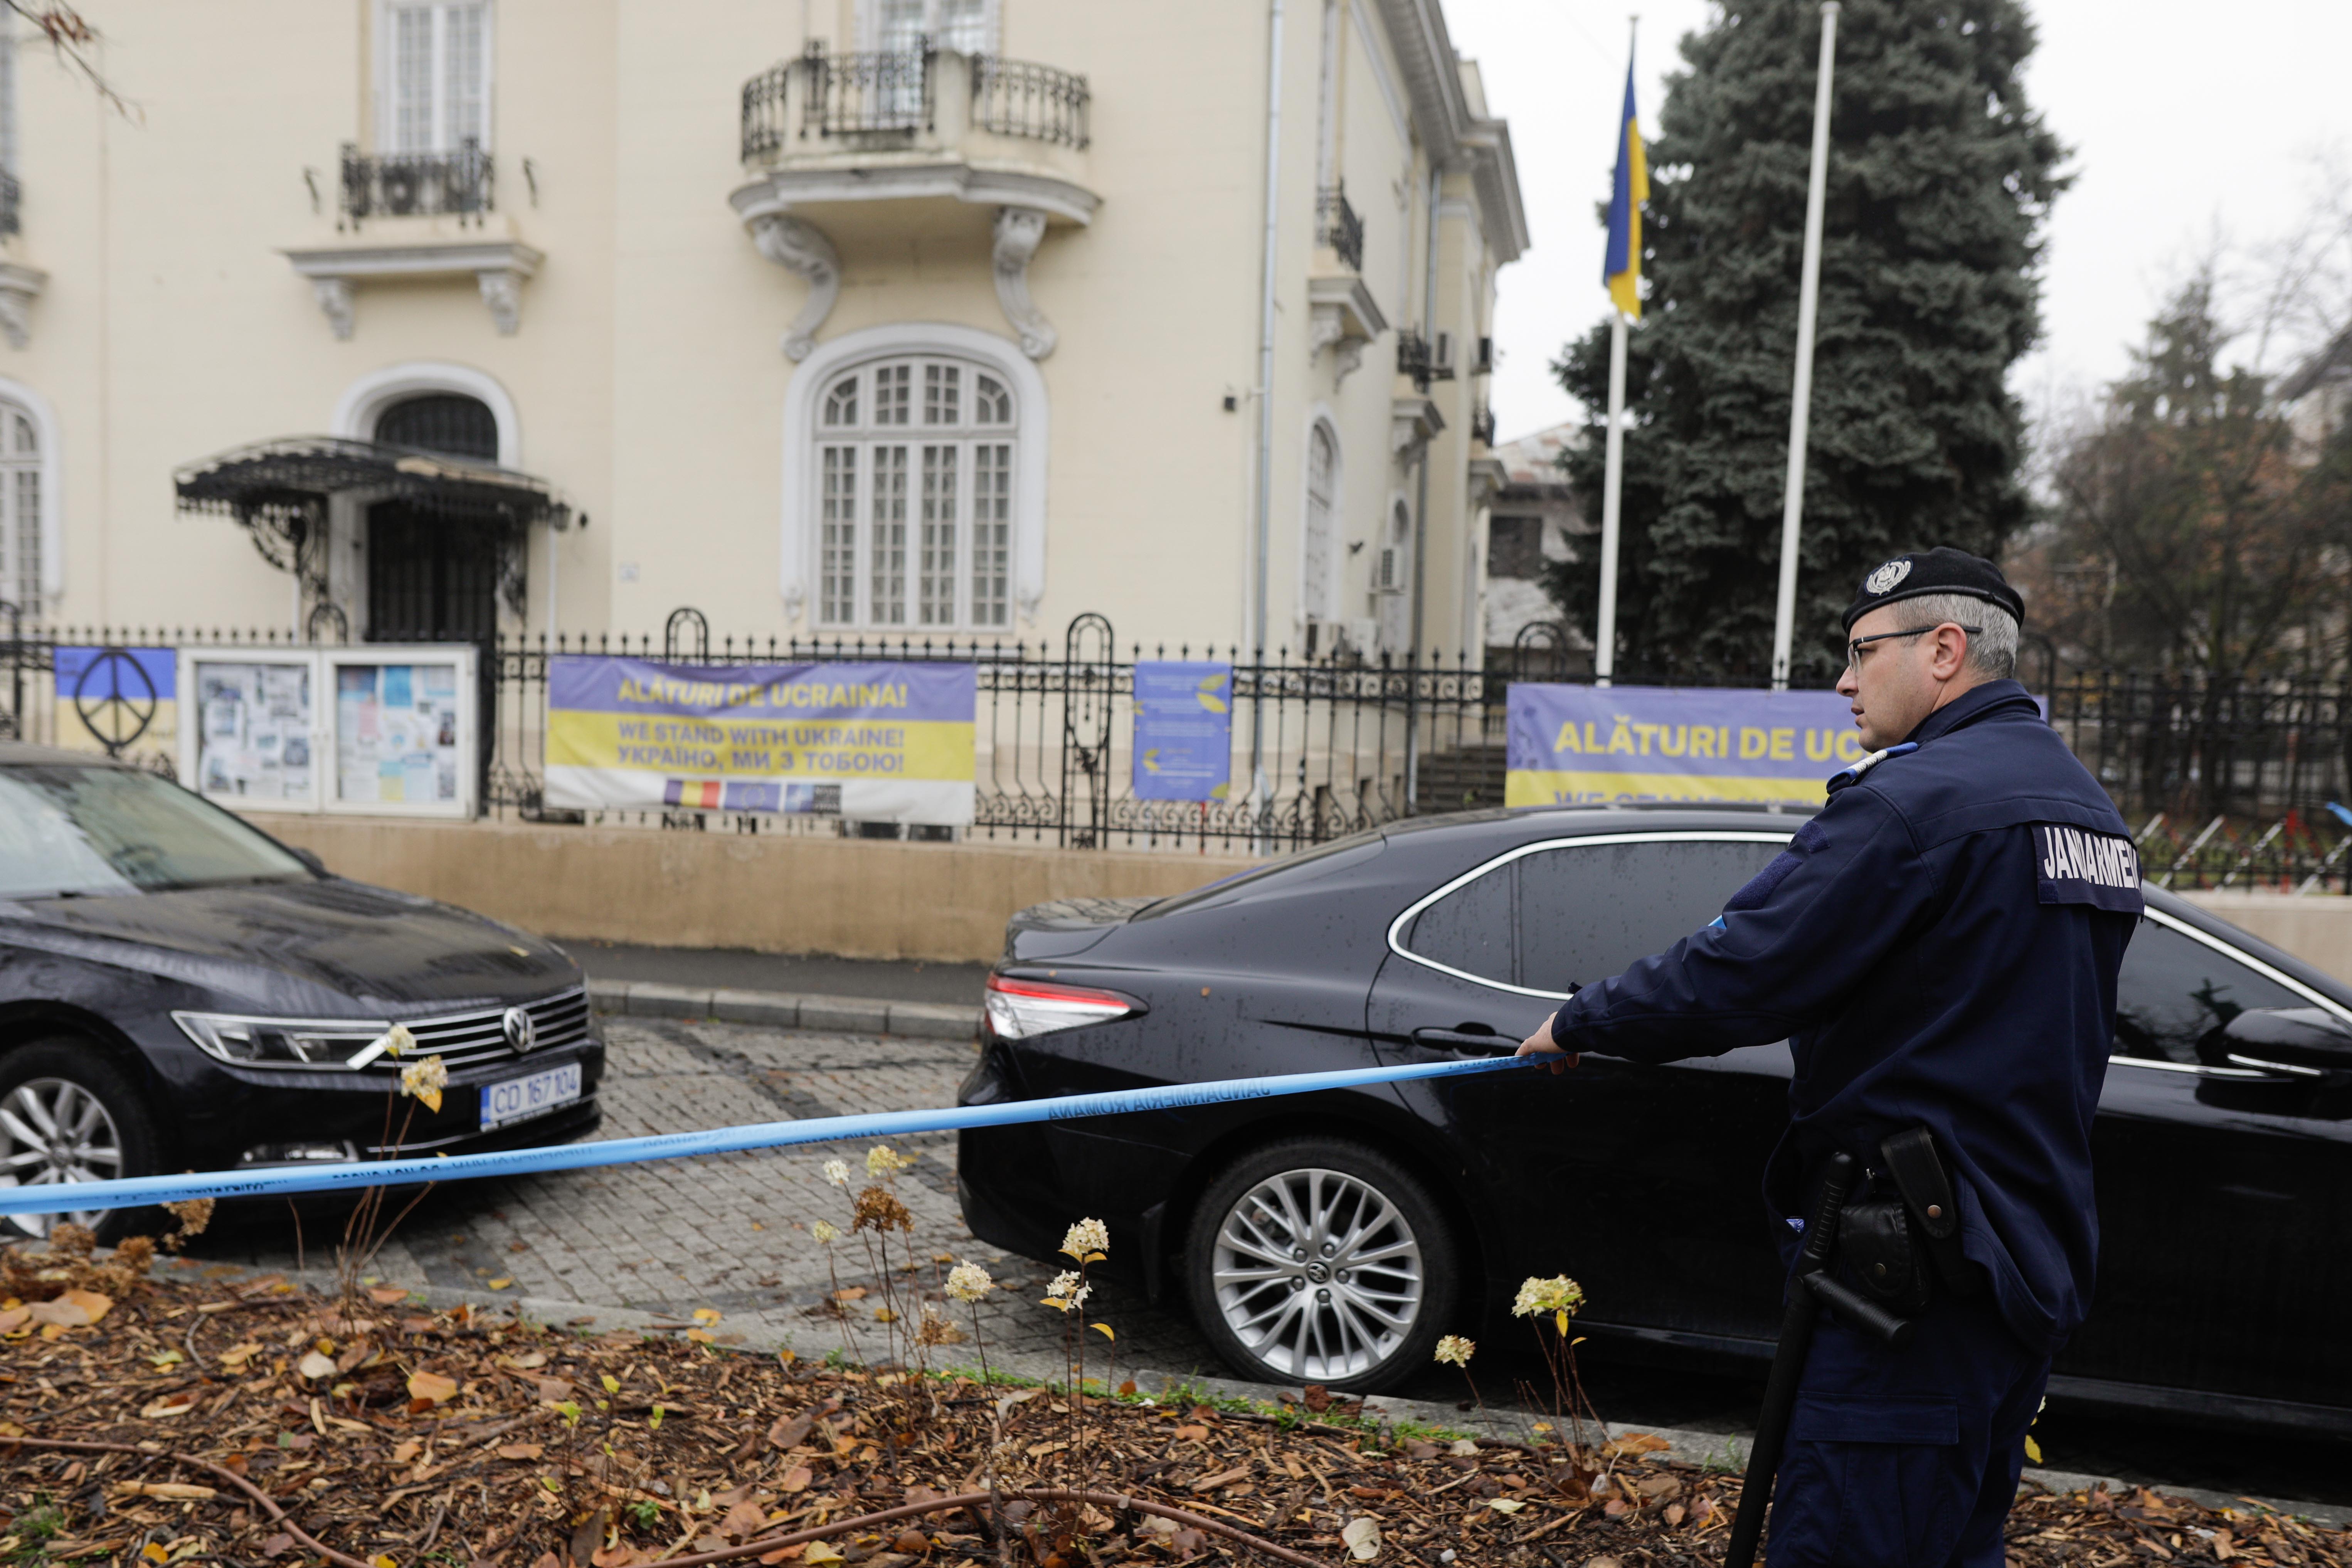 Plicuri suspecte primite de Ambasada Ucrainei de la București. Campanie de atacuri în toată lumea. Reacția Ucrainei FOTO - Imaginea 2